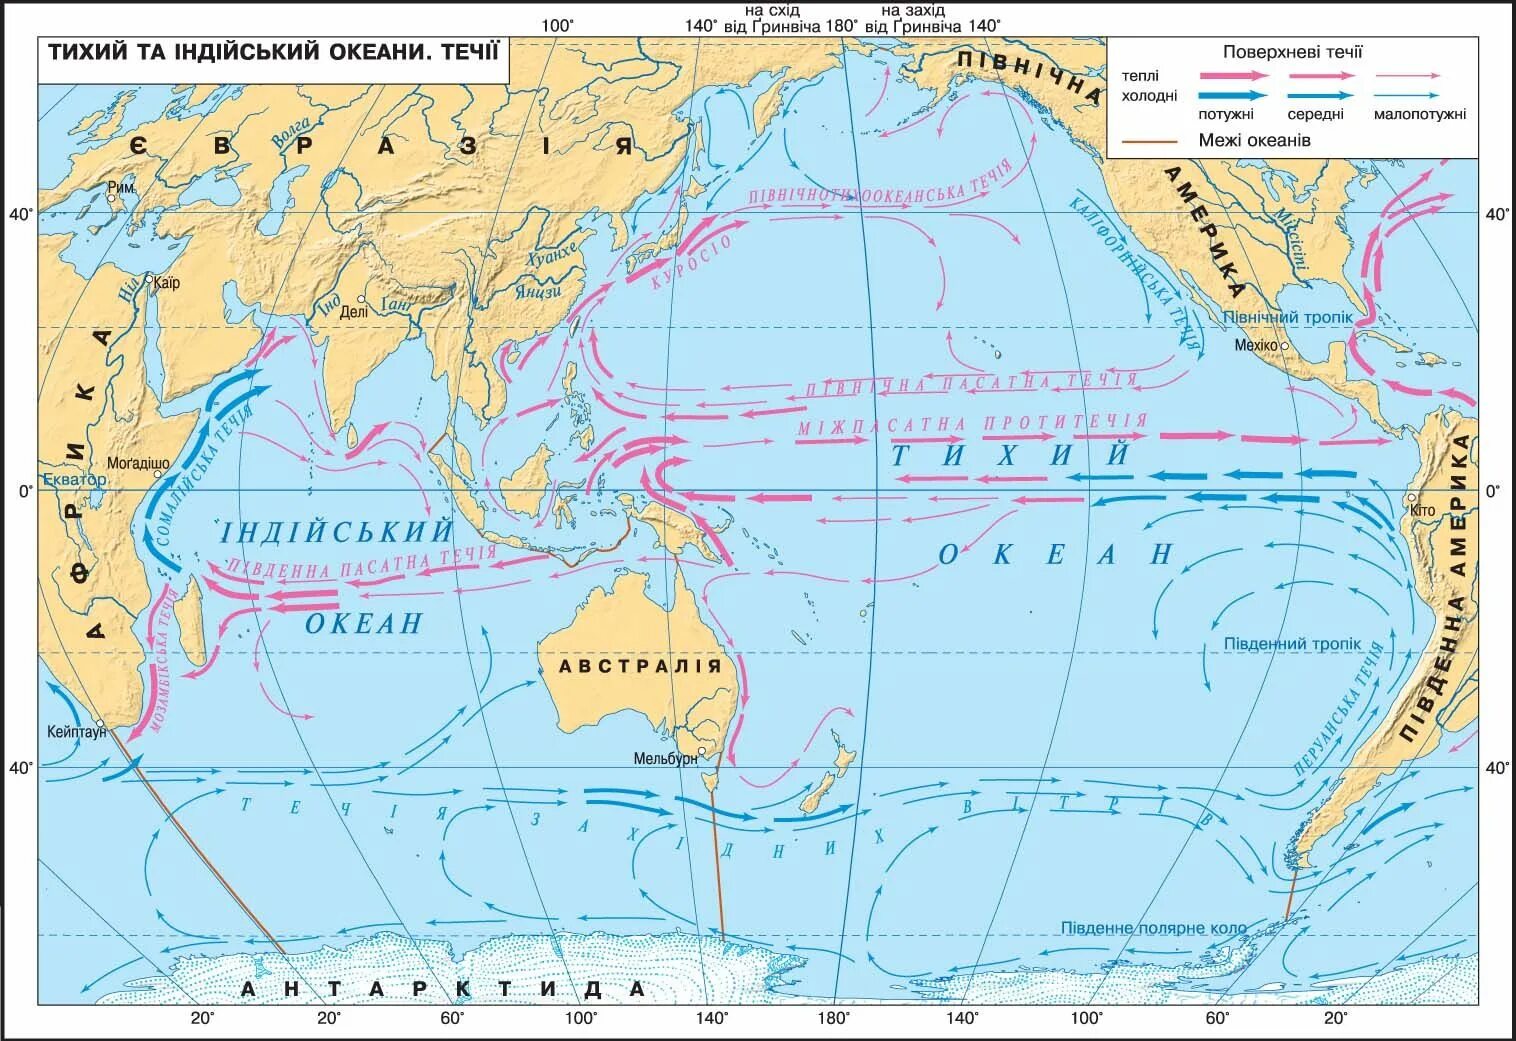 7 течений любых. Карта течений Тихого океана. Тихий океан карта 7 класс атлас холодные и теплые течения. Течения Тихого океана 7 класс. Течения Тихого океана теплые и холодные на карте 7.